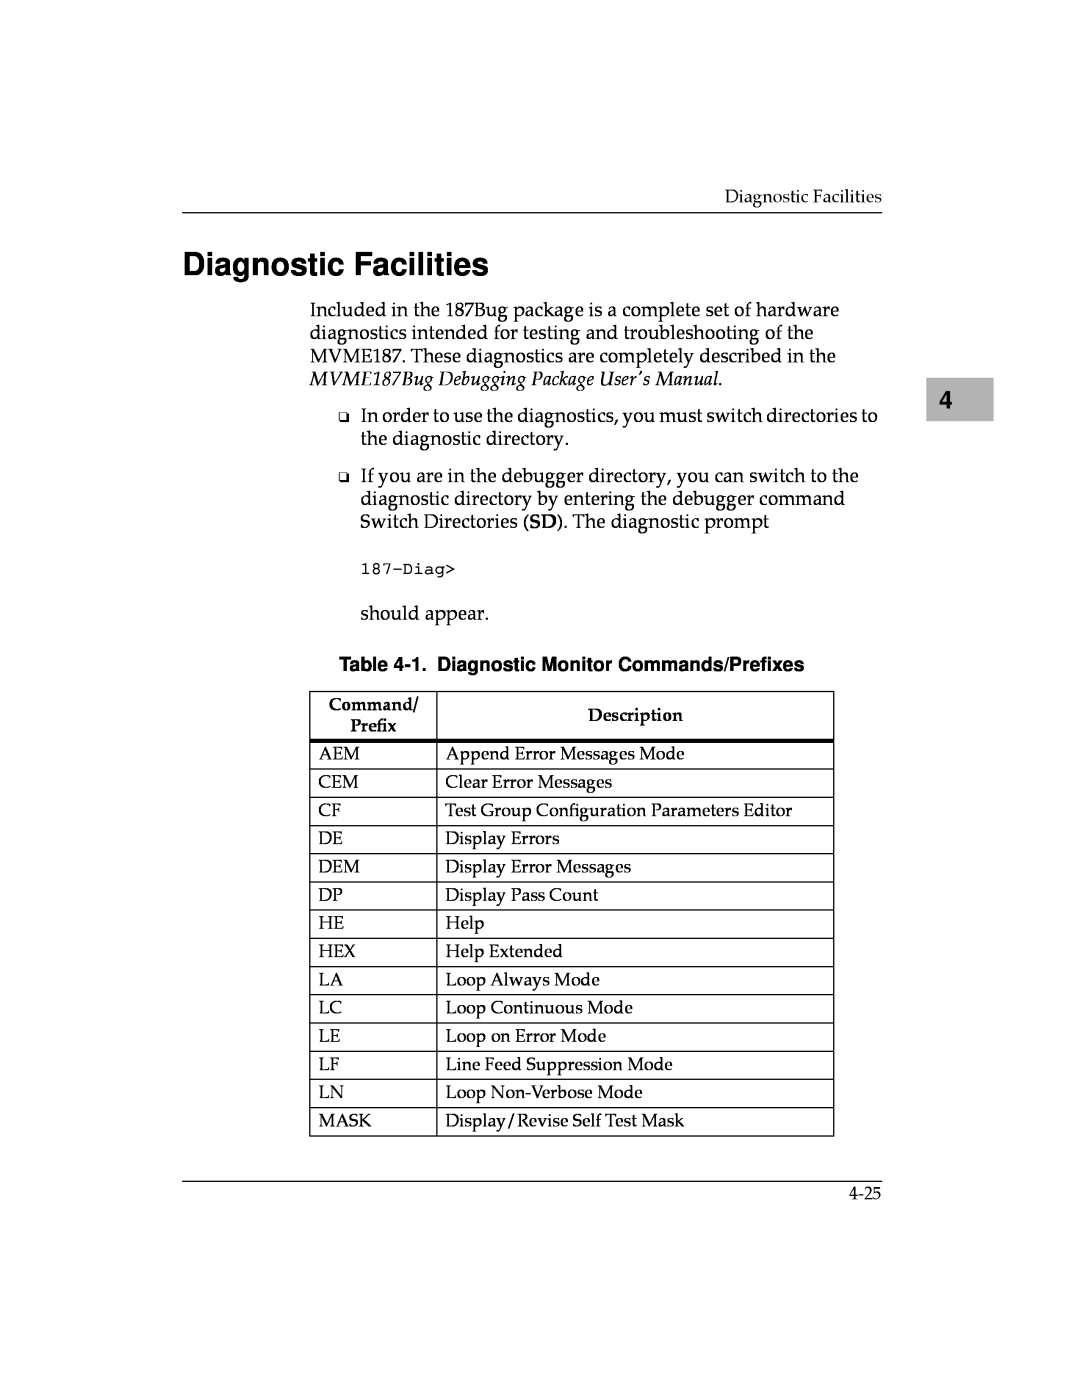 Motorola MVME187 manual Diagnostic Facilities, 1. Diagnostic Monitor Commands/Preﬁxes 